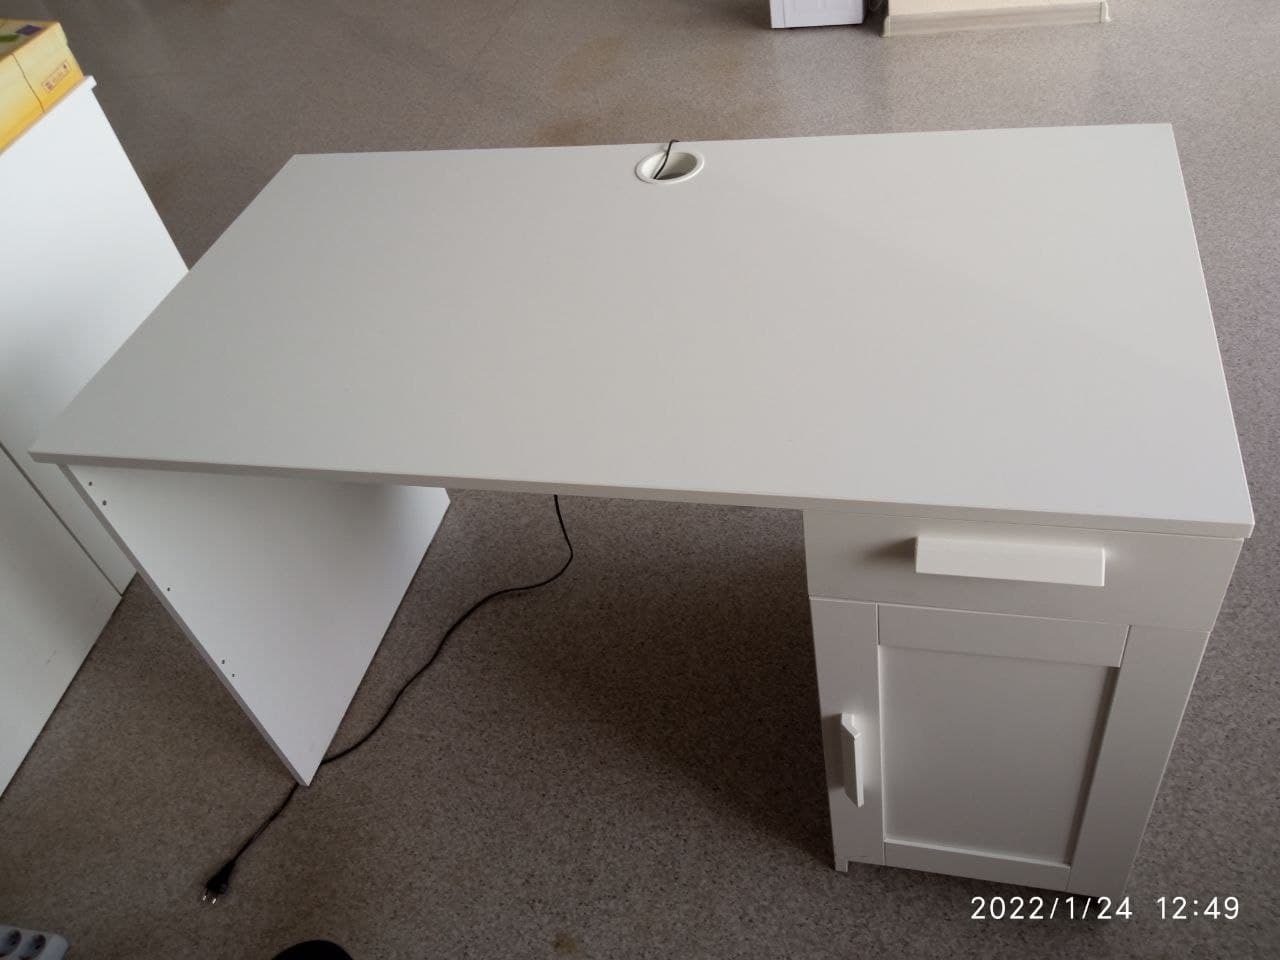 бримнэс письменный стол белый 120x65 см